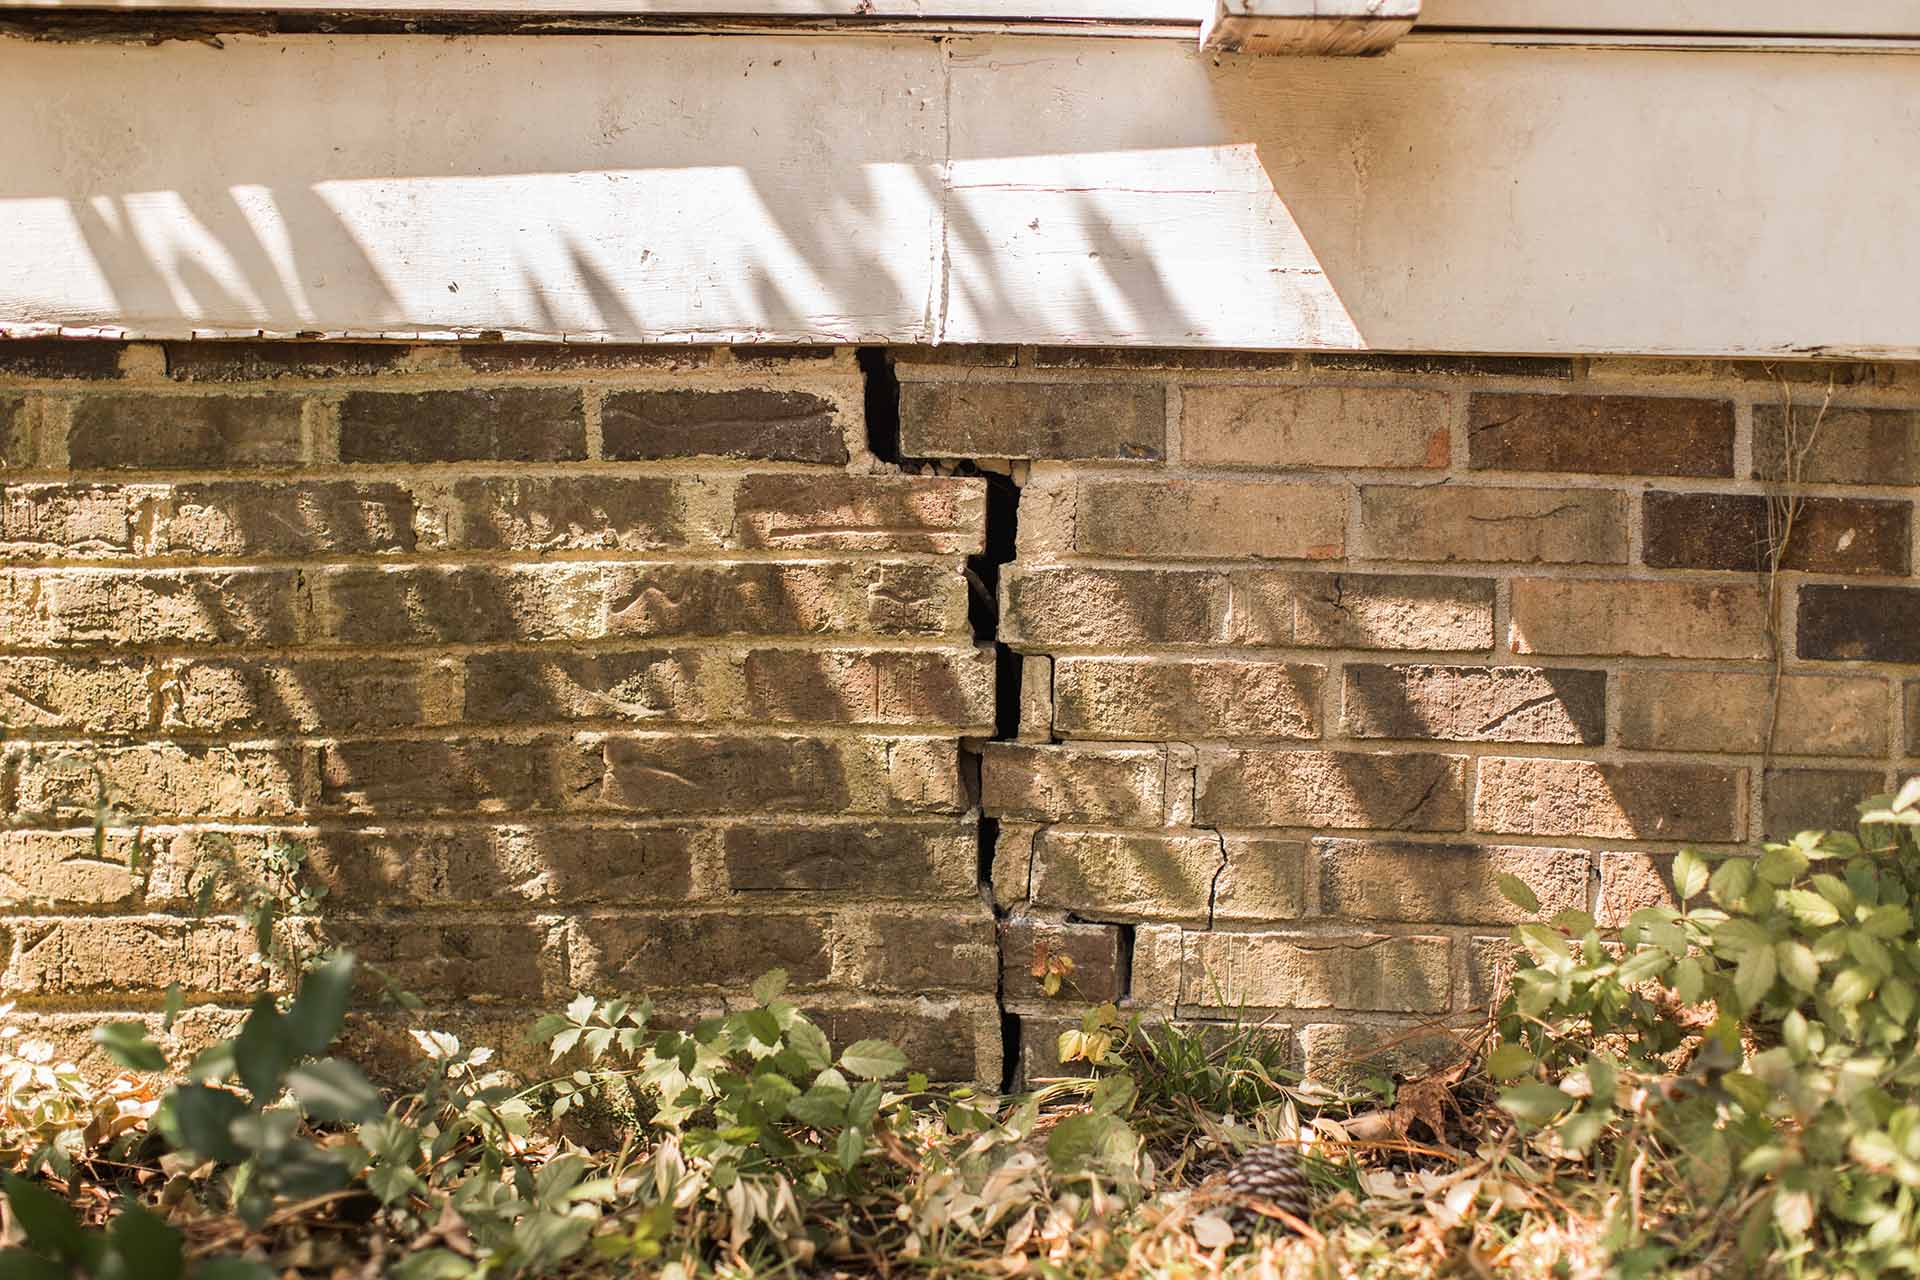 exterior crack in foundation brick